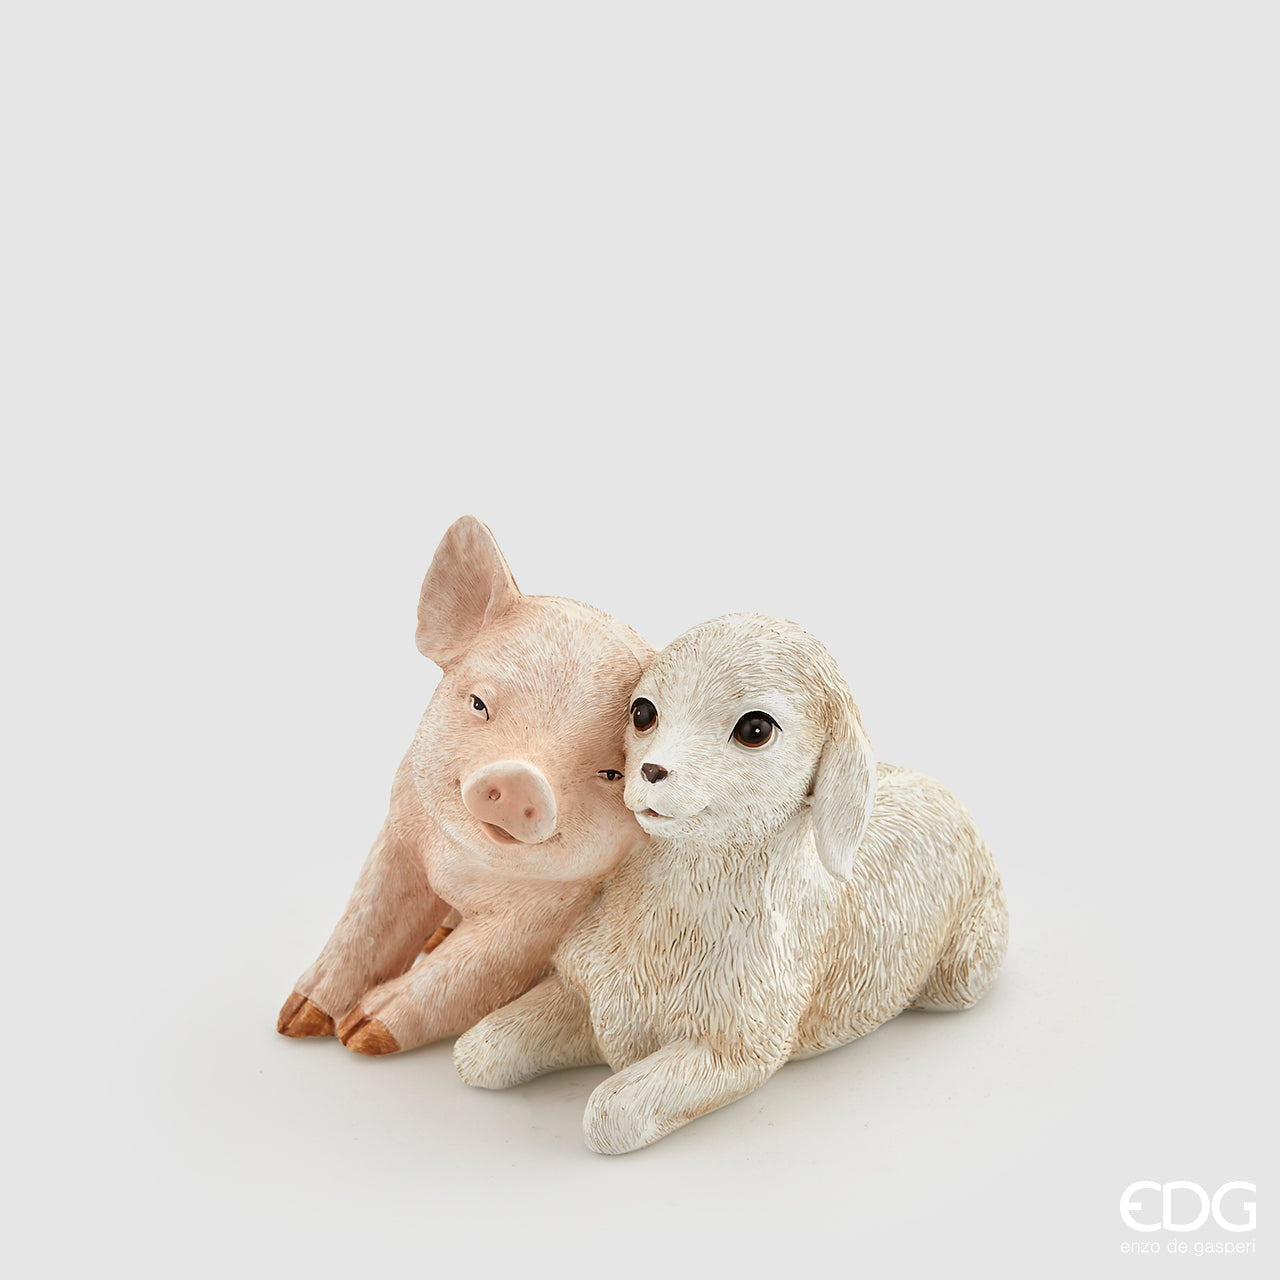 Maialino e pecorella in resina decorata. Dimensioni: cm 9 x 10 x 9,5 h. In negozio e online su tuttochic.it